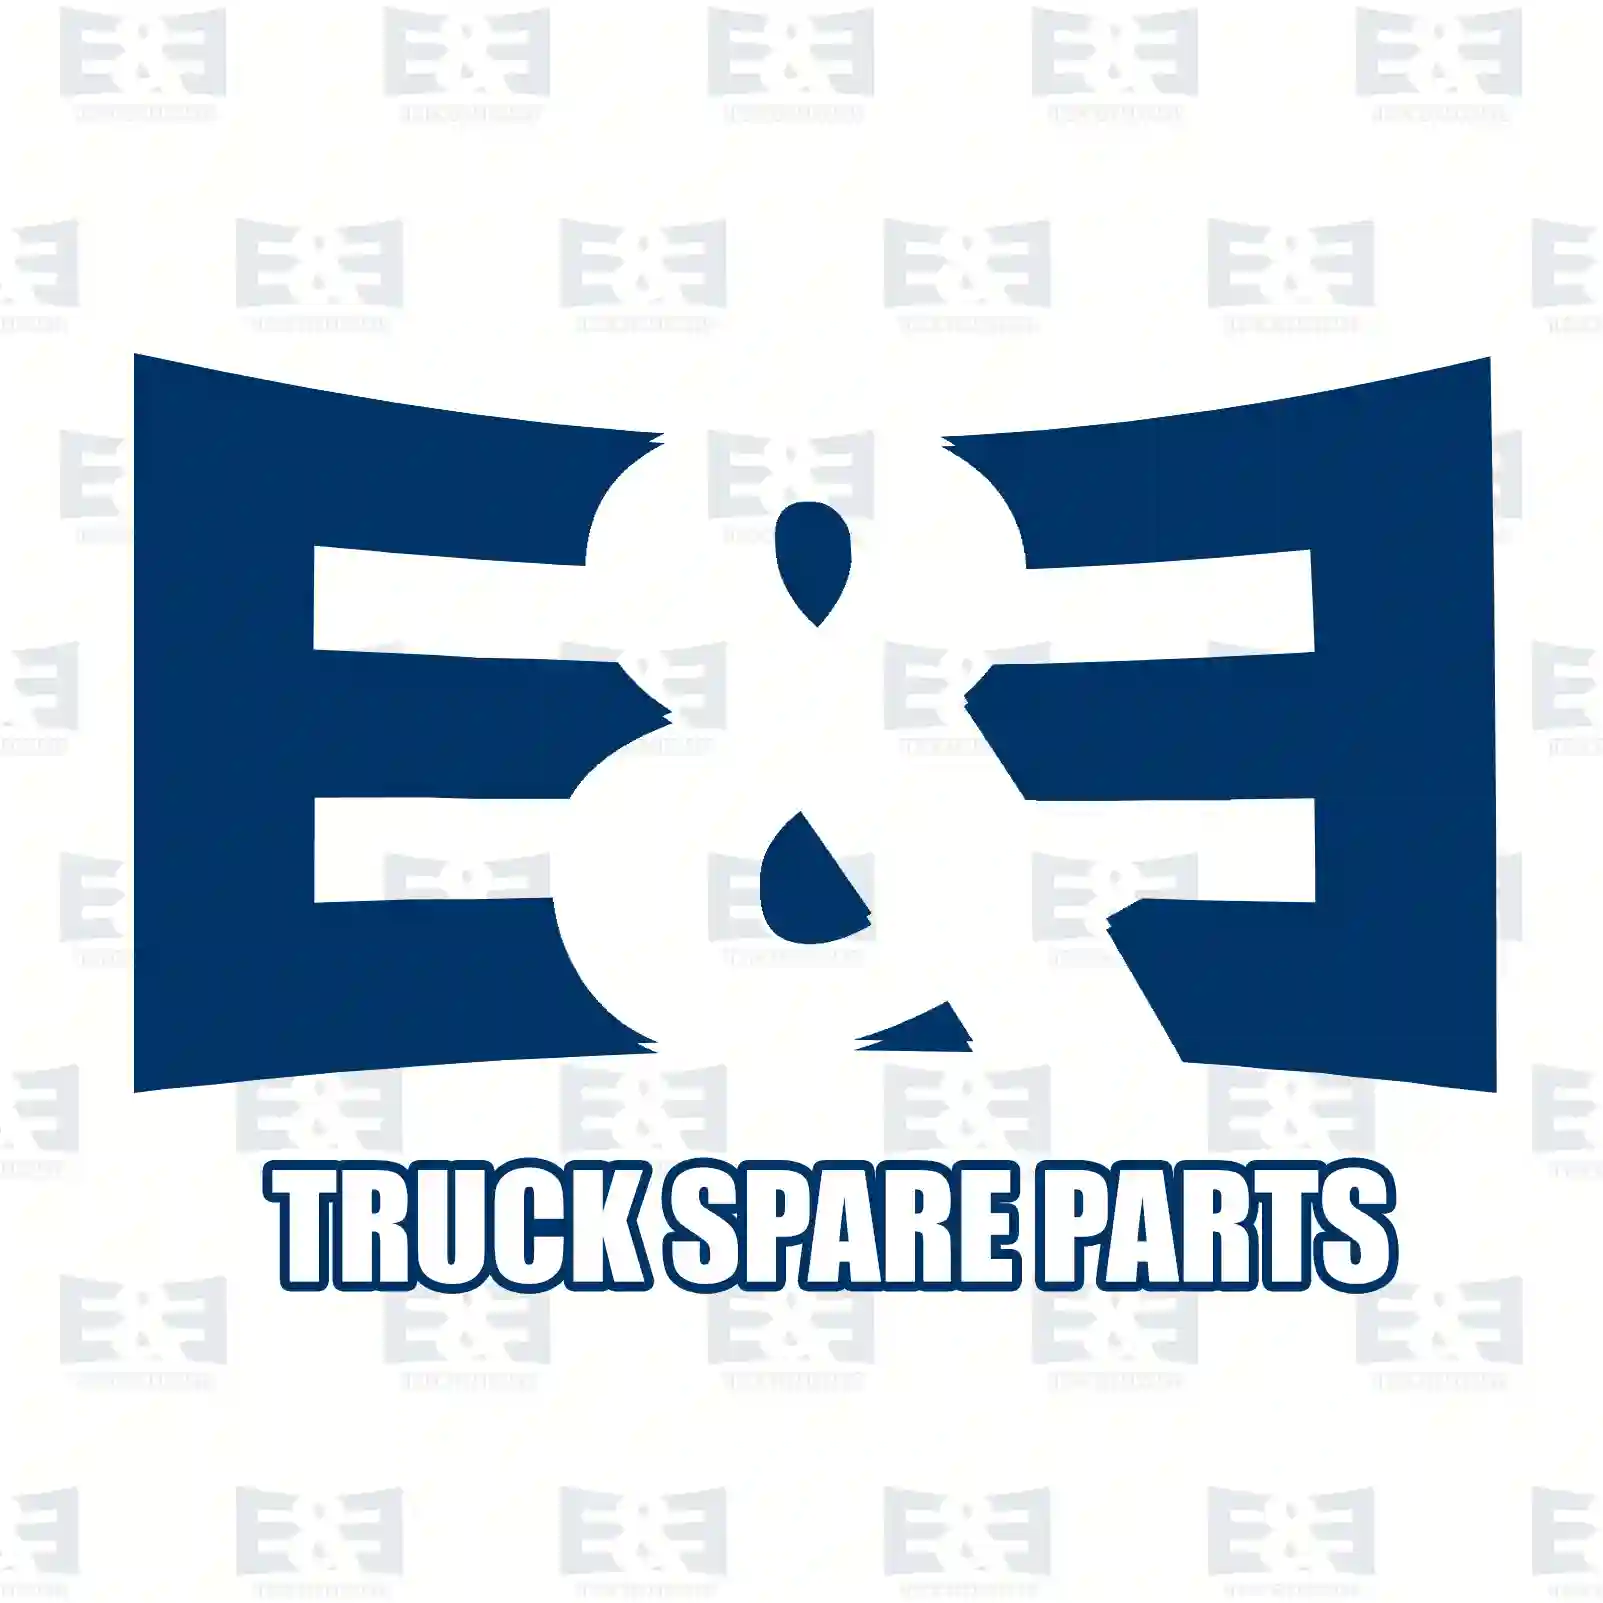 Spring bracket, 2E2283298, 3953251119, 6243250319, ||  2E2283298 E&E Truck Spare Parts | Truck Spare Parts, Auotomotive Spare Parts Spring bracket, 2E2283298, 3953251119, 6243250319, ||  2E2283298 E&E Truck Spare Parts | Truck Spare Parts, Auotomotive Spare Parts